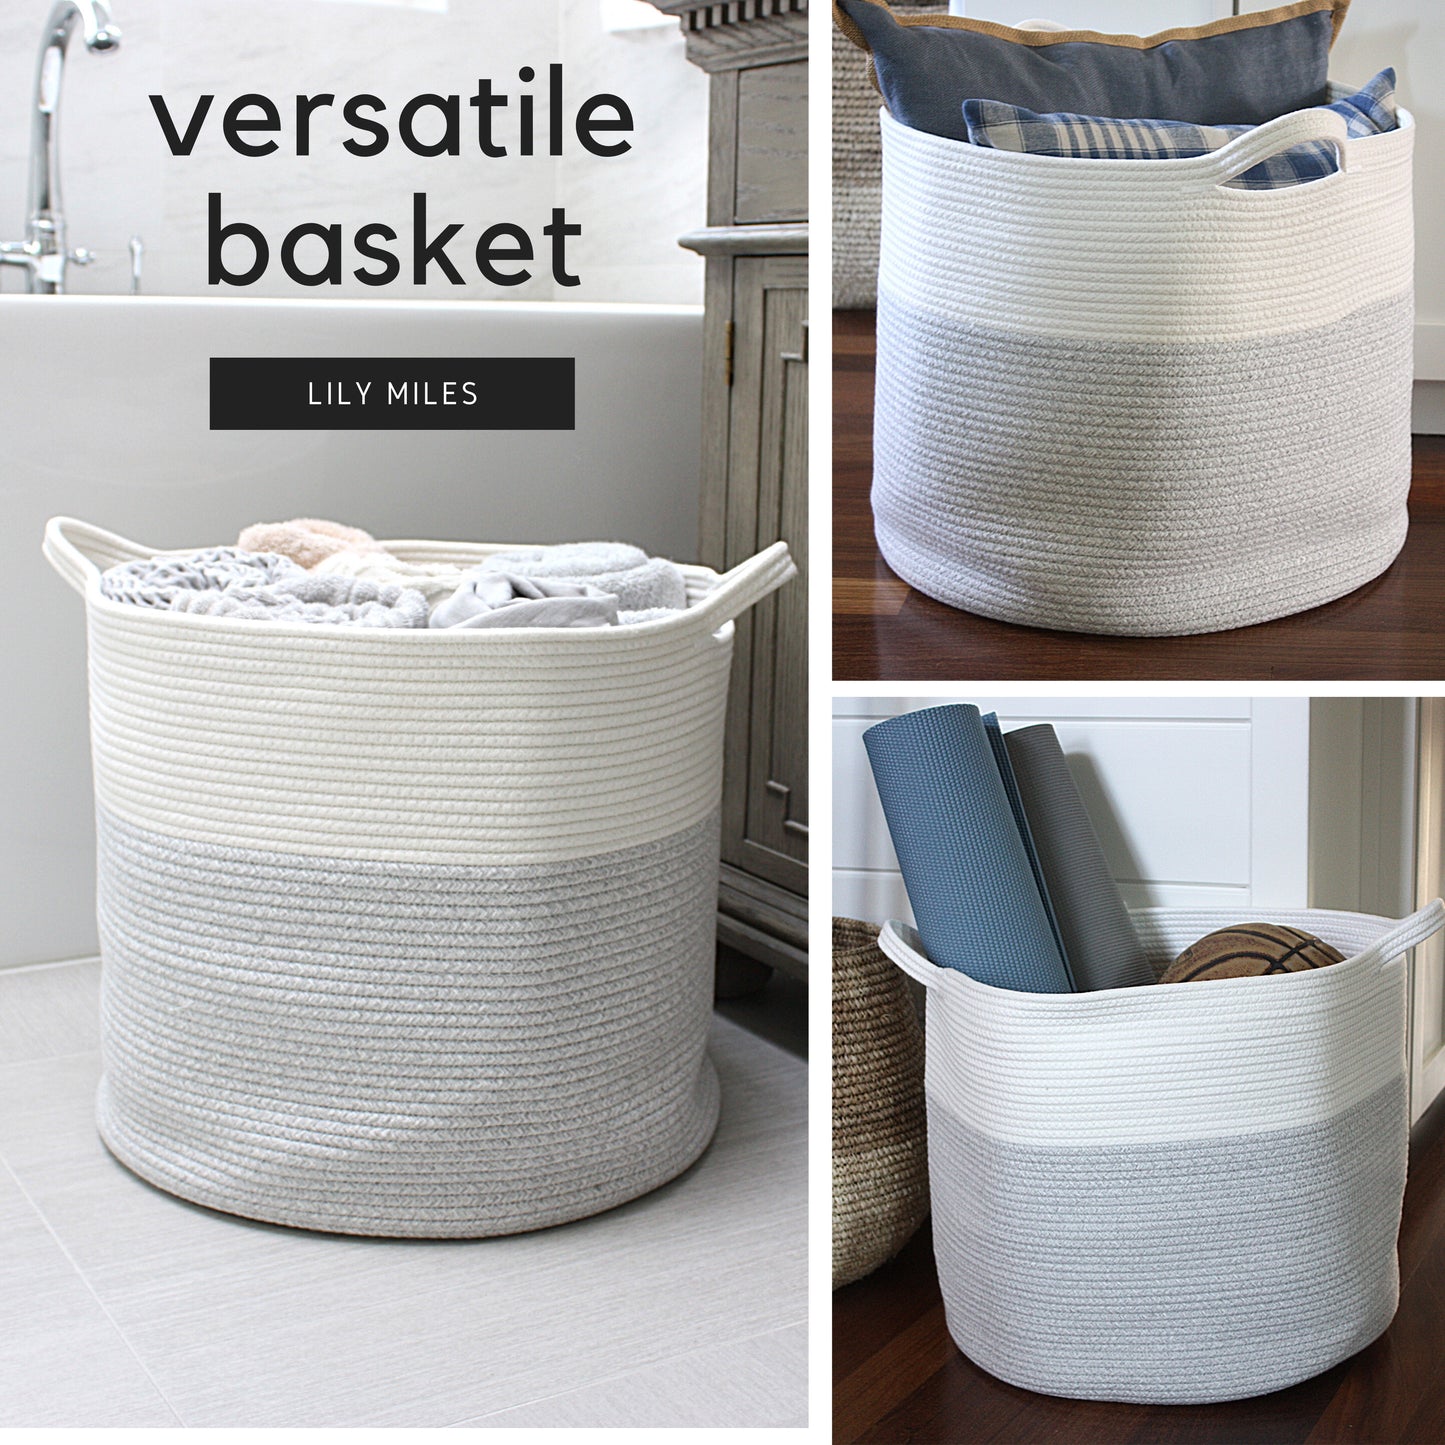 Woven Blanket Storage Basket - 18"x16"